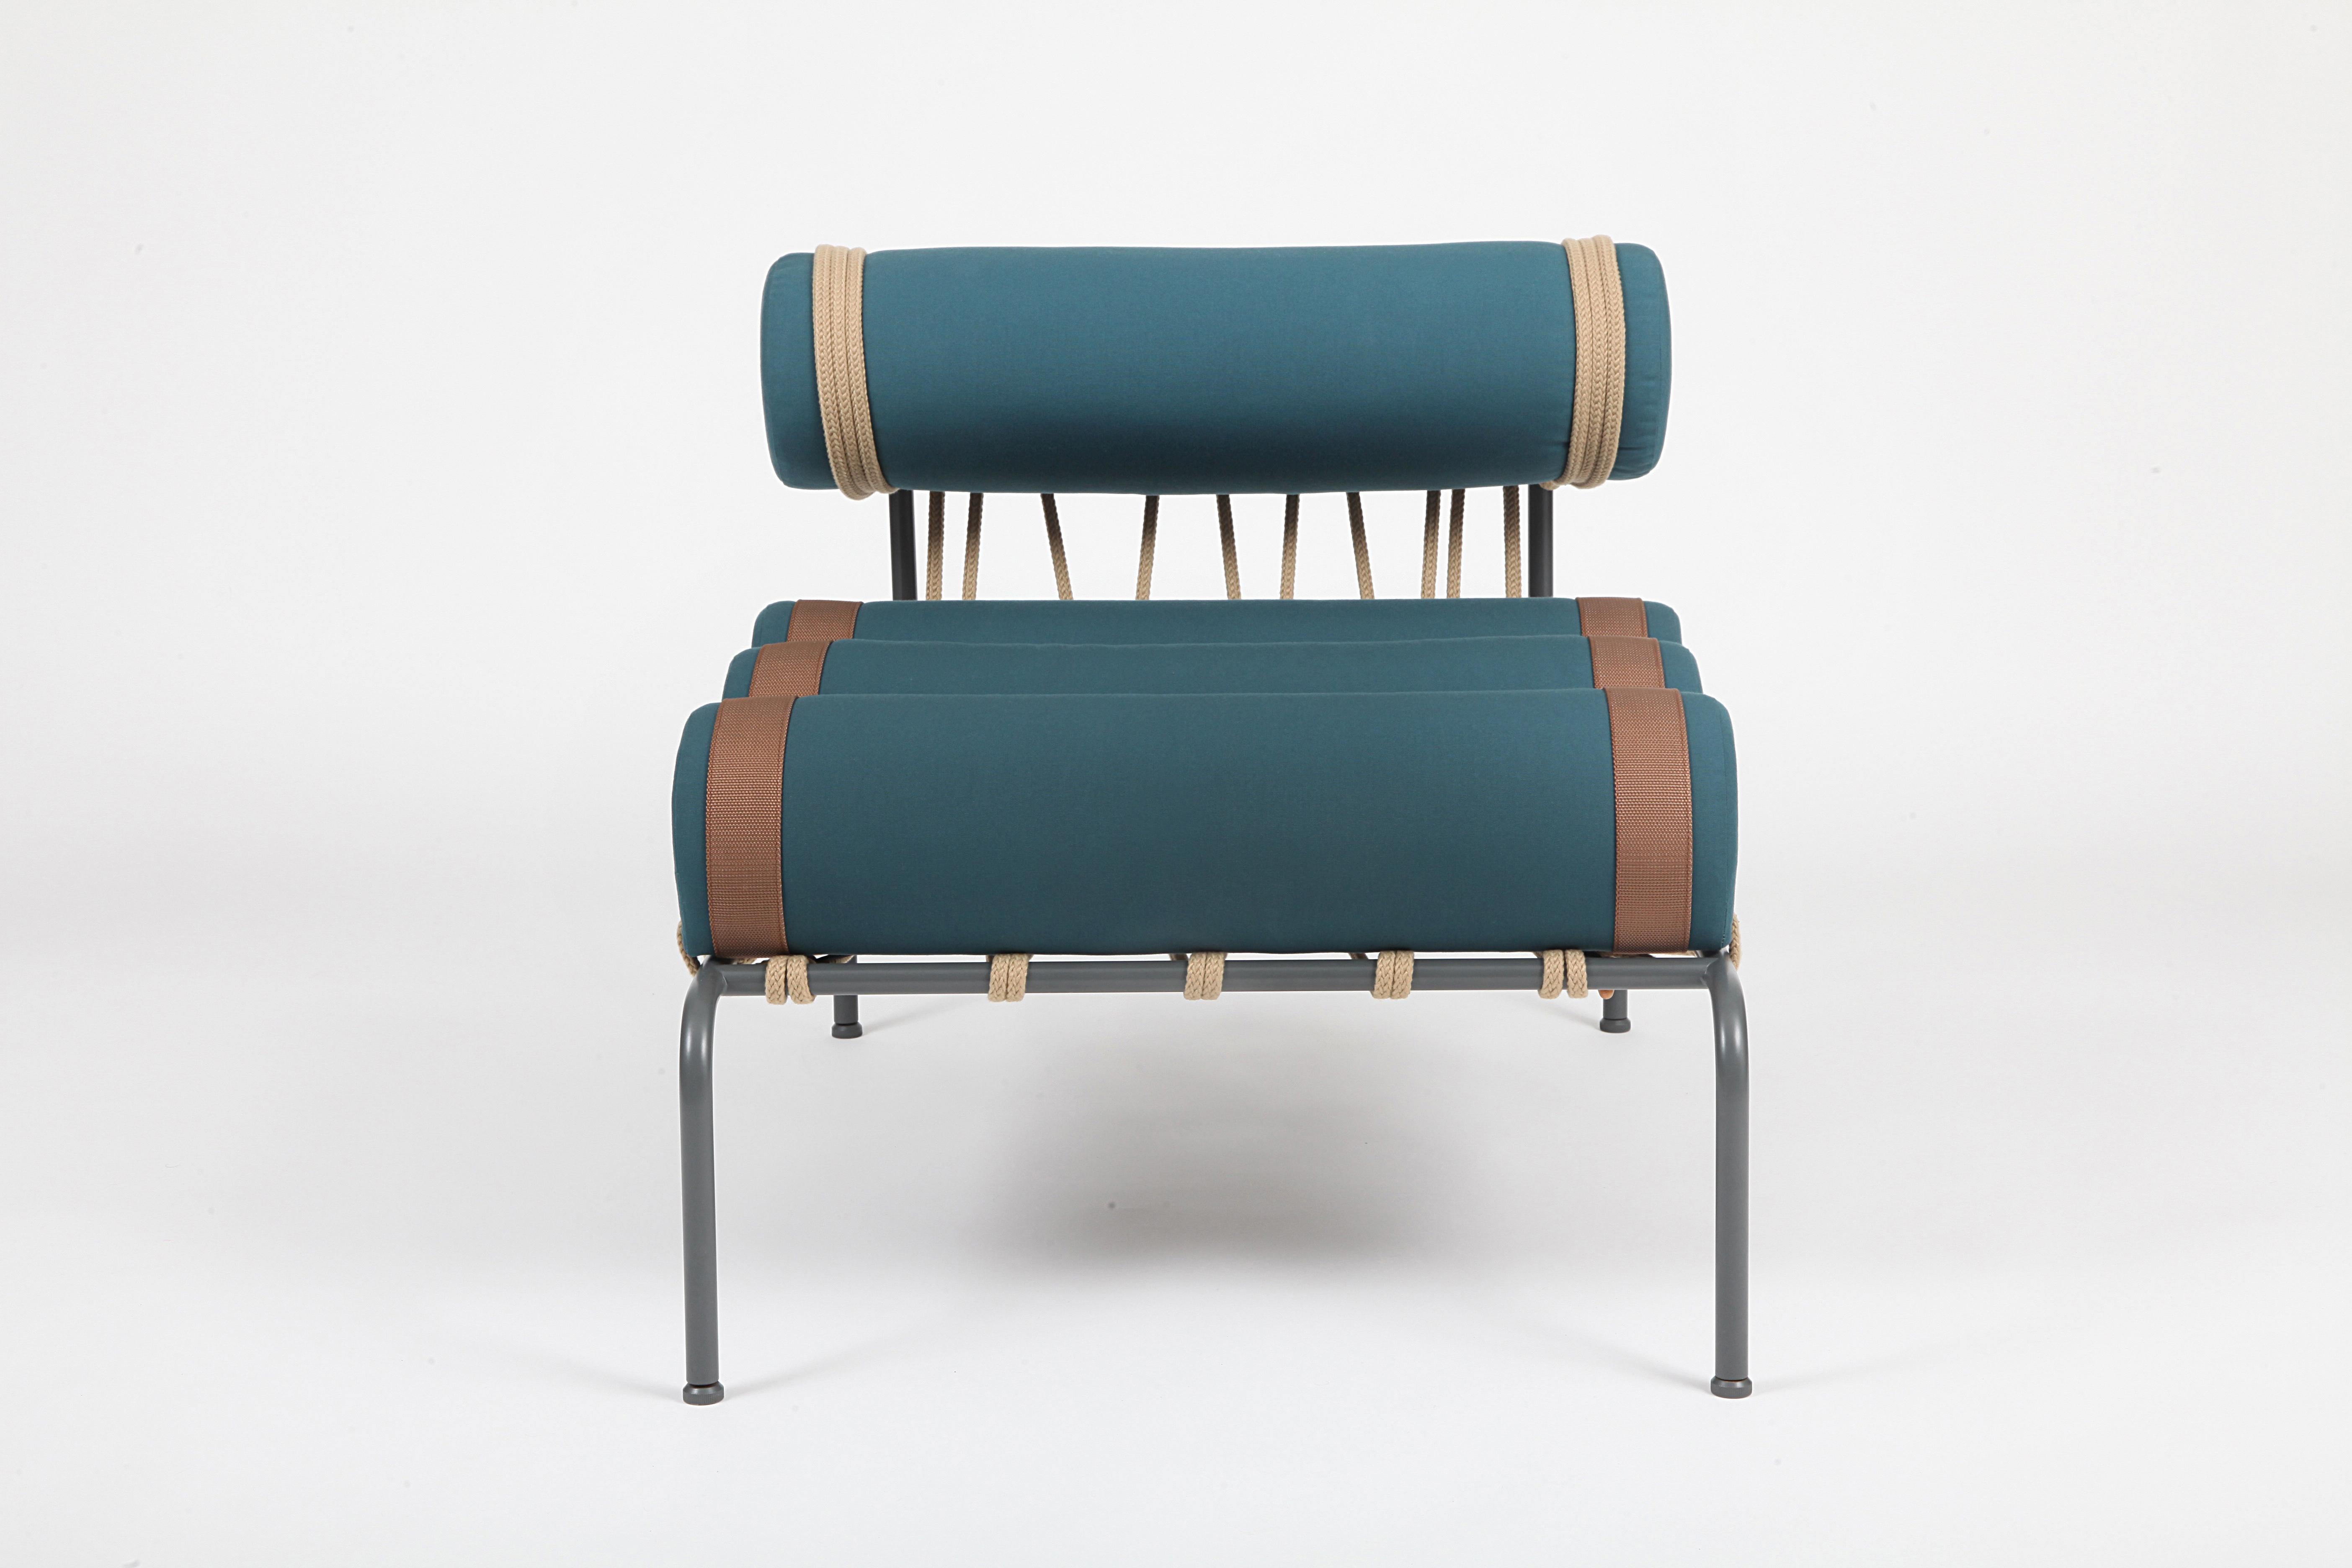 Der Sessel Kylíndo ist ein Sitzmöbel für den Außenbereich mit neu gestalteten Proportionen. Entstanden aus einer Extrusion von Zylindern, einer geometrischen Figur, die sich aus der vollständigen Drehung eines Rechtecks um eine seiner Seiten ergibt.